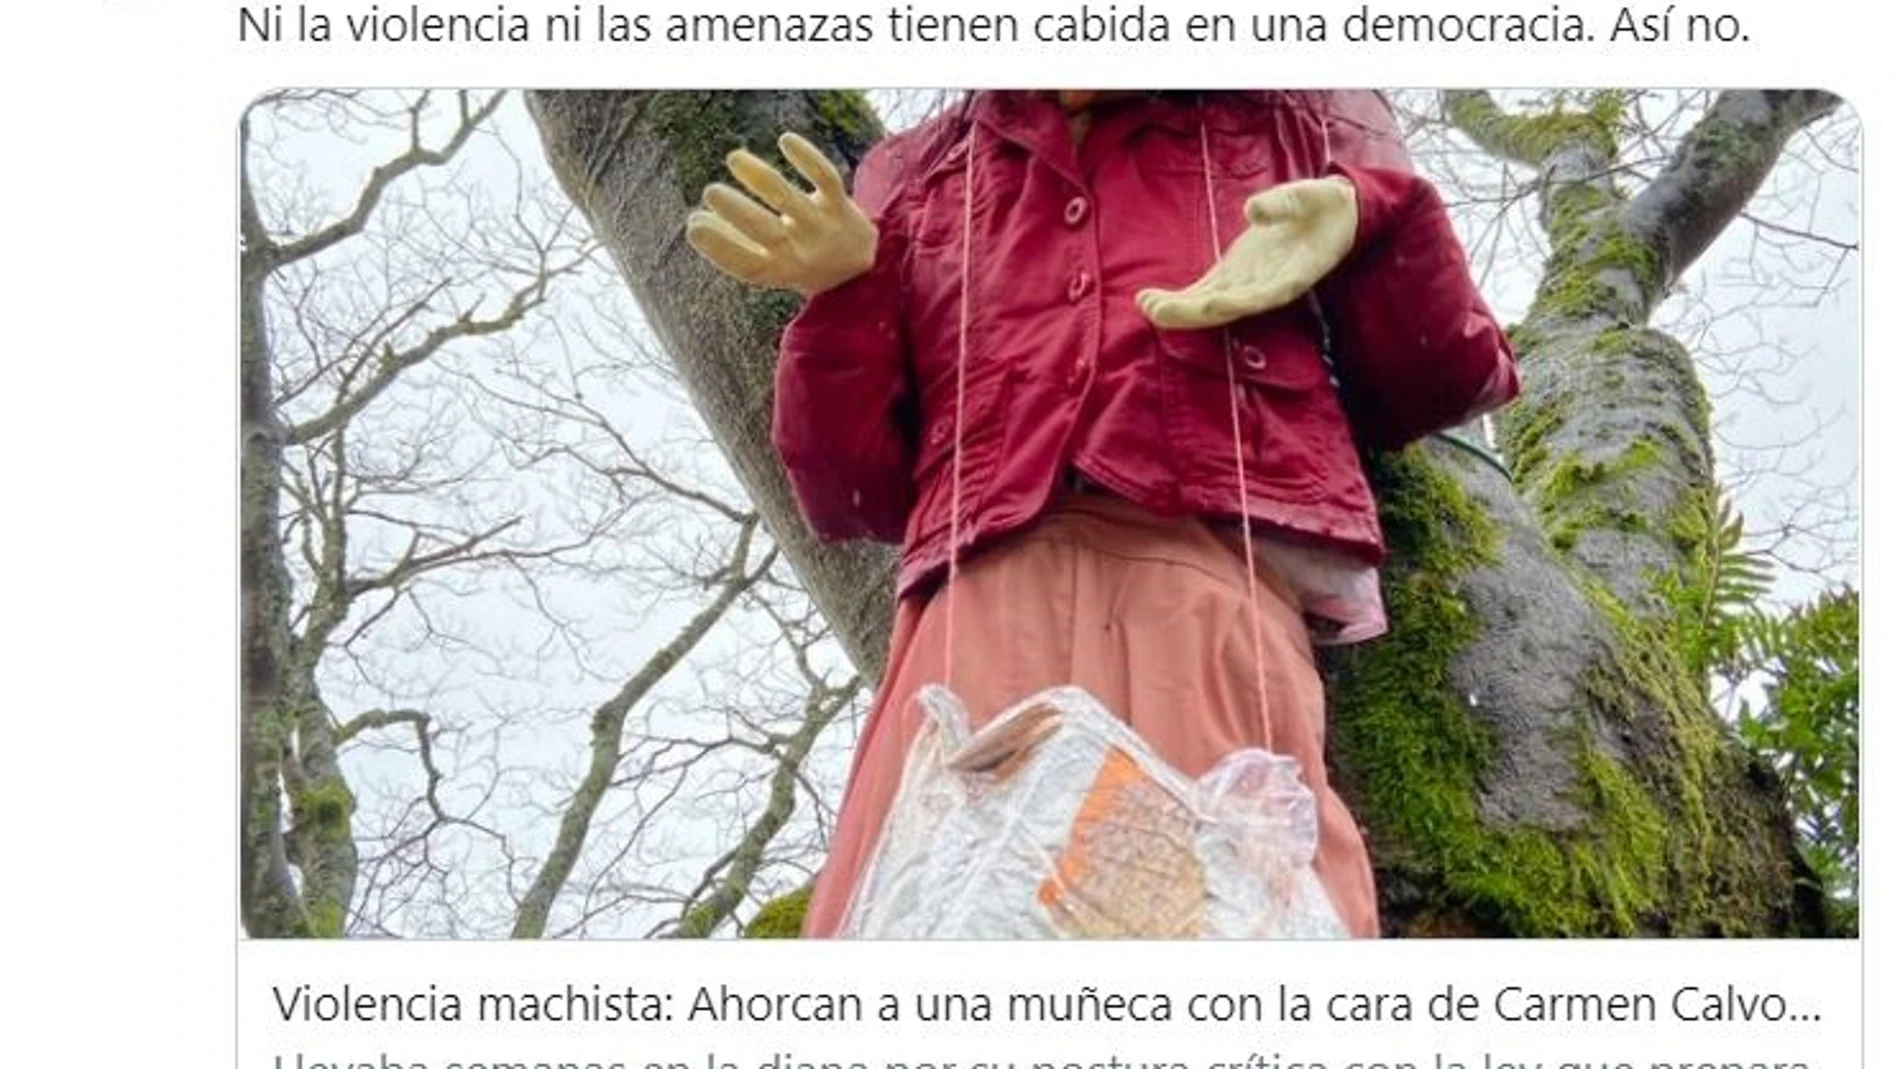 La vicepresidenta primera Carmen Calvo rechaza las amenazas ante la foto de una muñeca ahorcada con su caraEUROPA PRESS20/02/2021